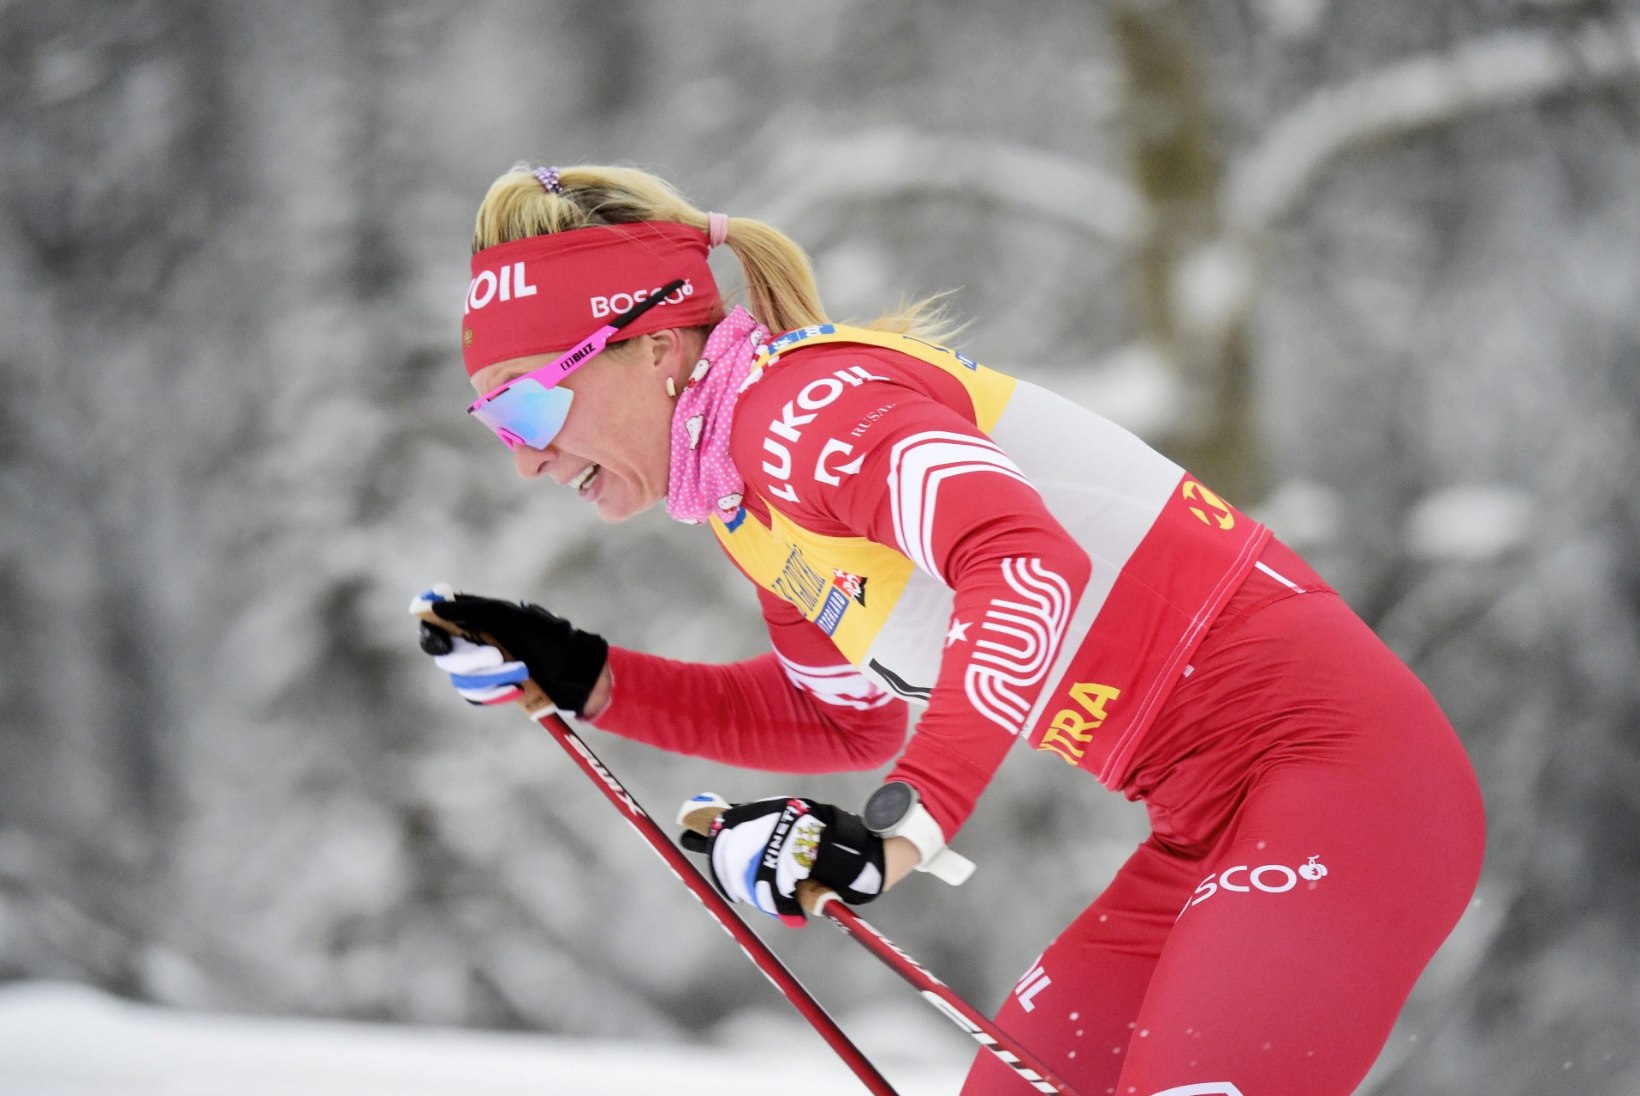 Rootsi ajakirjanik kahtlustab Ruka üllatajat dopingu tarvitamises. Jelena Välbe: ma ei kommenteeri idiootide kirjutisi